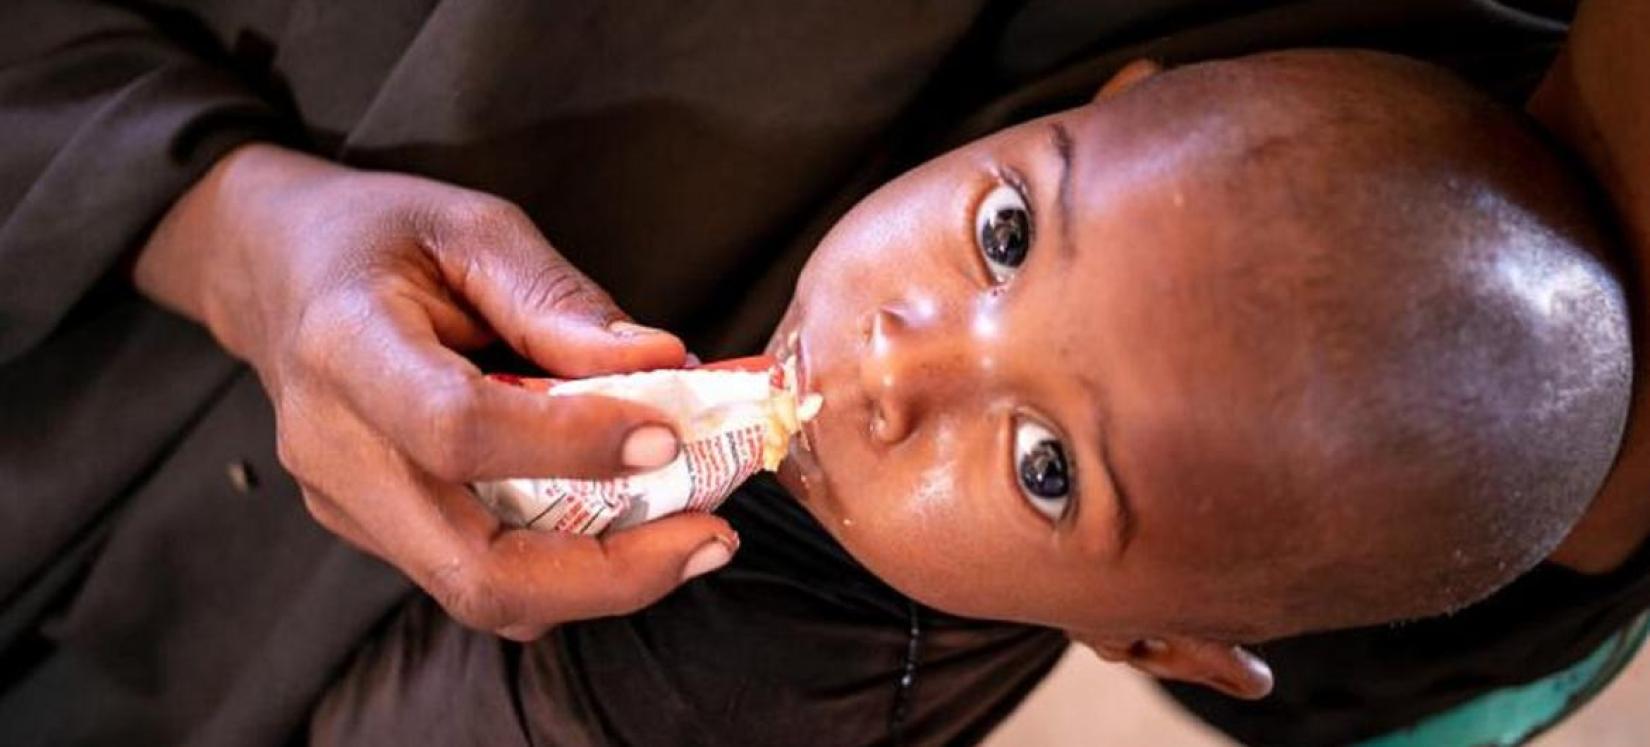 O UNICEF Somália oferece serviços de intervenção nutricional para crianças desnutridas.  